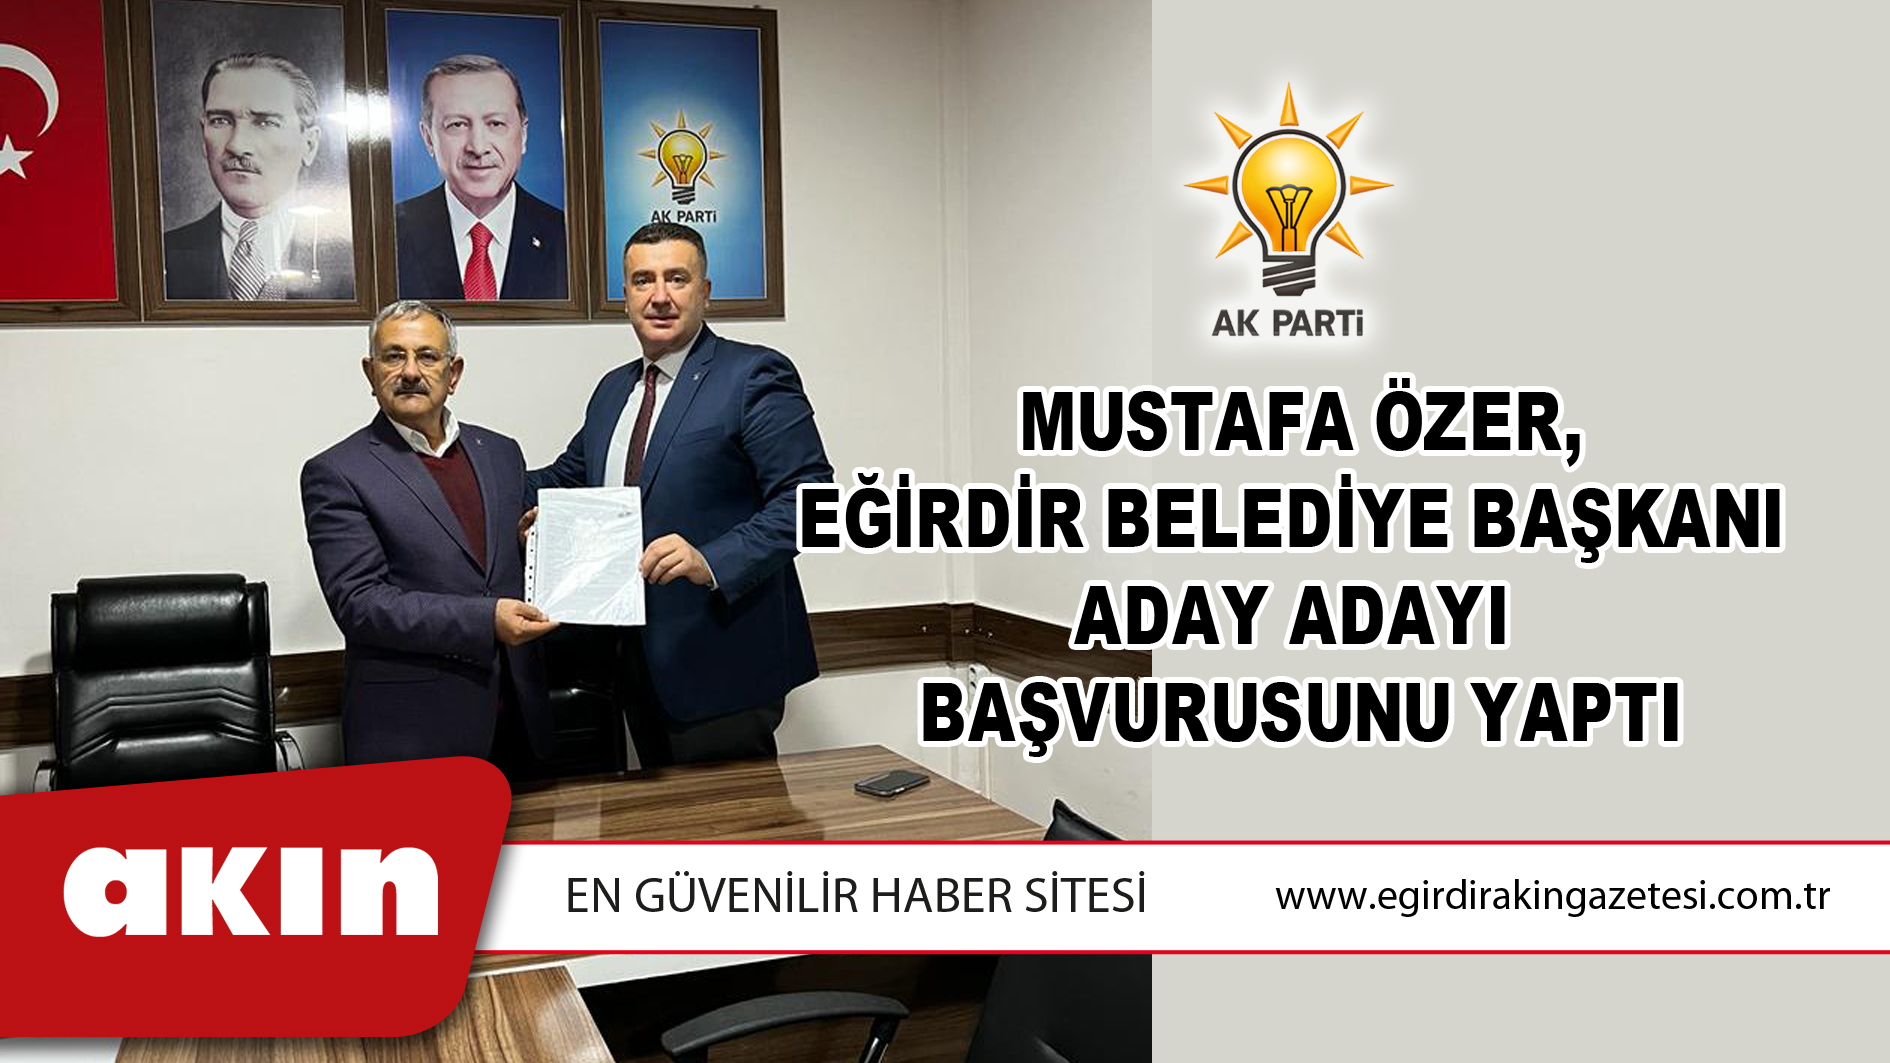 Mustafa Özer, Eğirdir Belediye Başkanı Aday Adayı Başvurusunu Yaptı